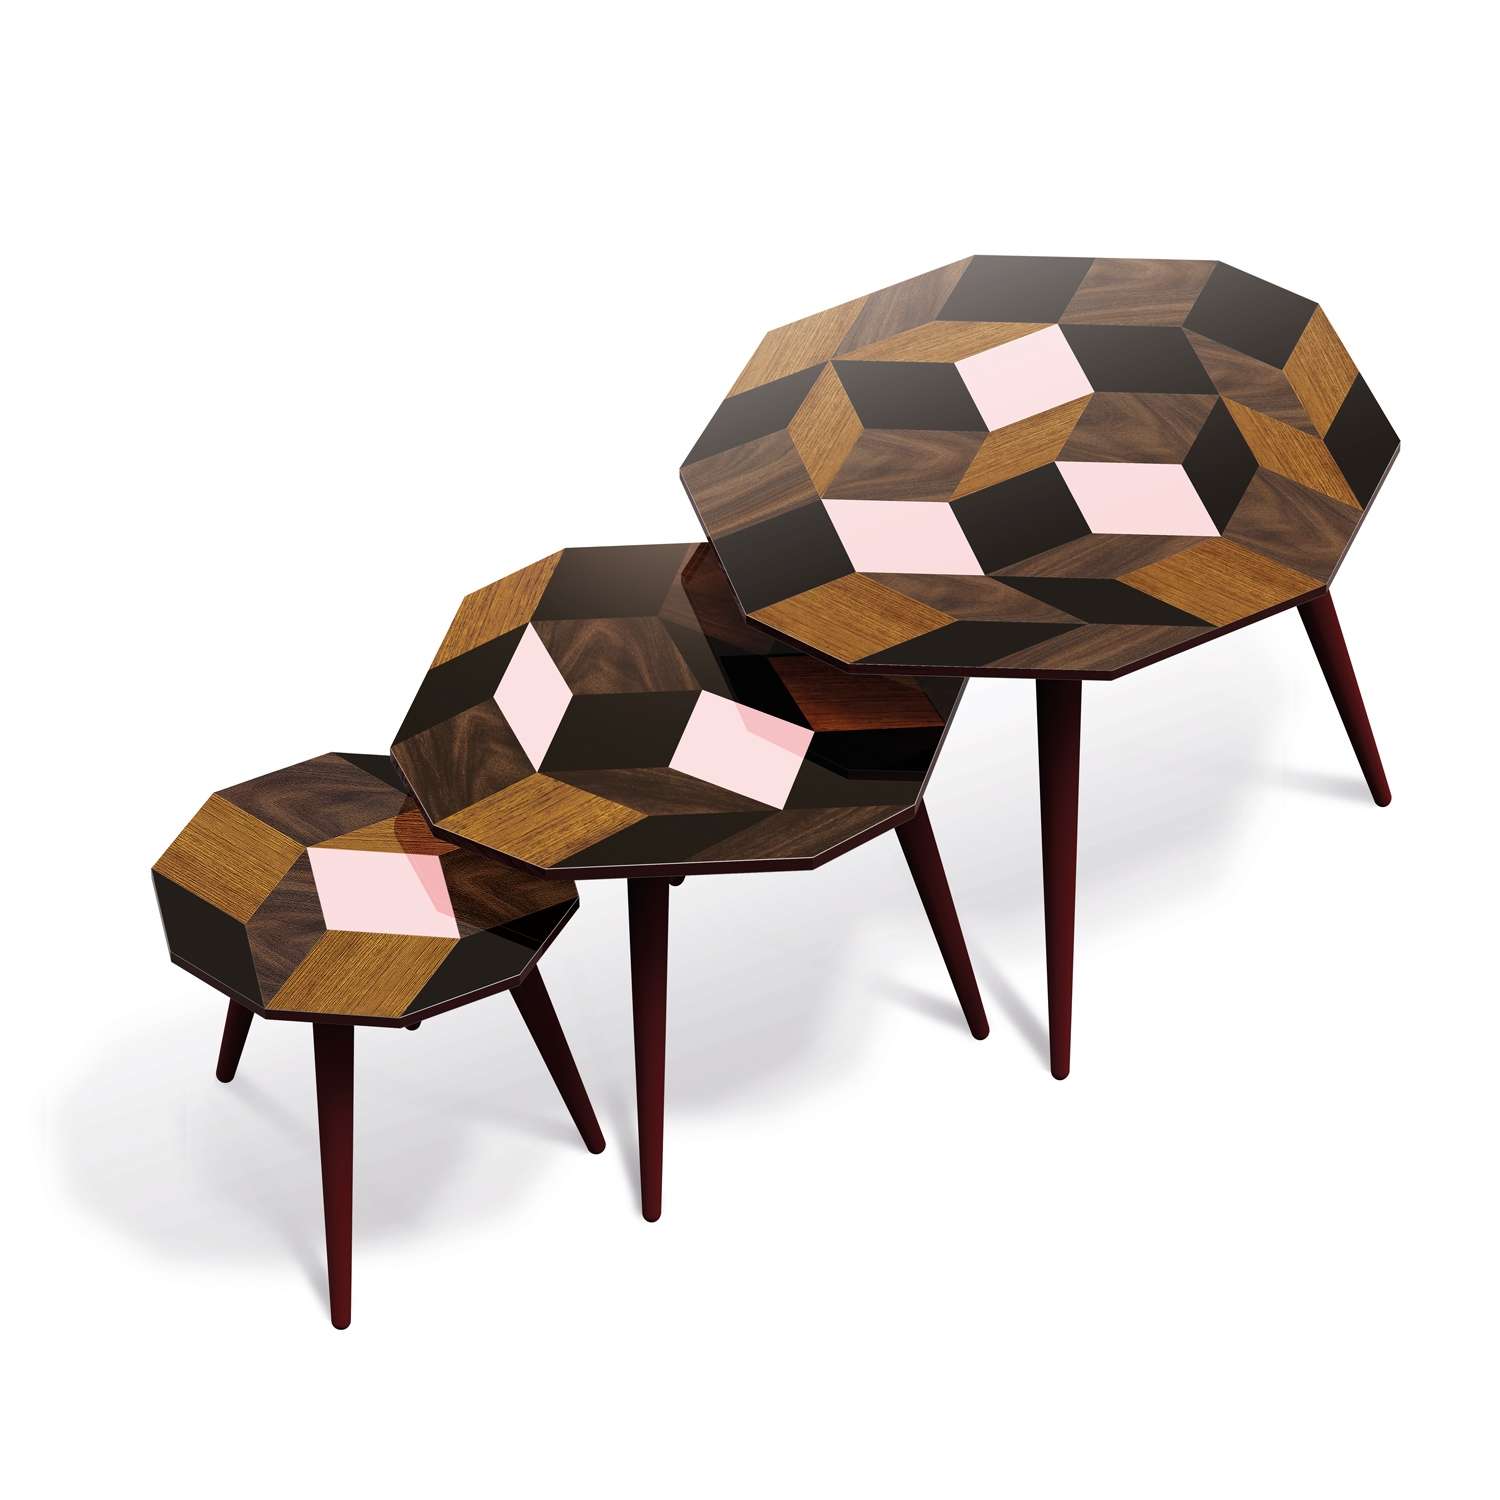 Trio de tables d'appoints, motif Penrose Spring Wood Design IchetKar édition Bazartherapy